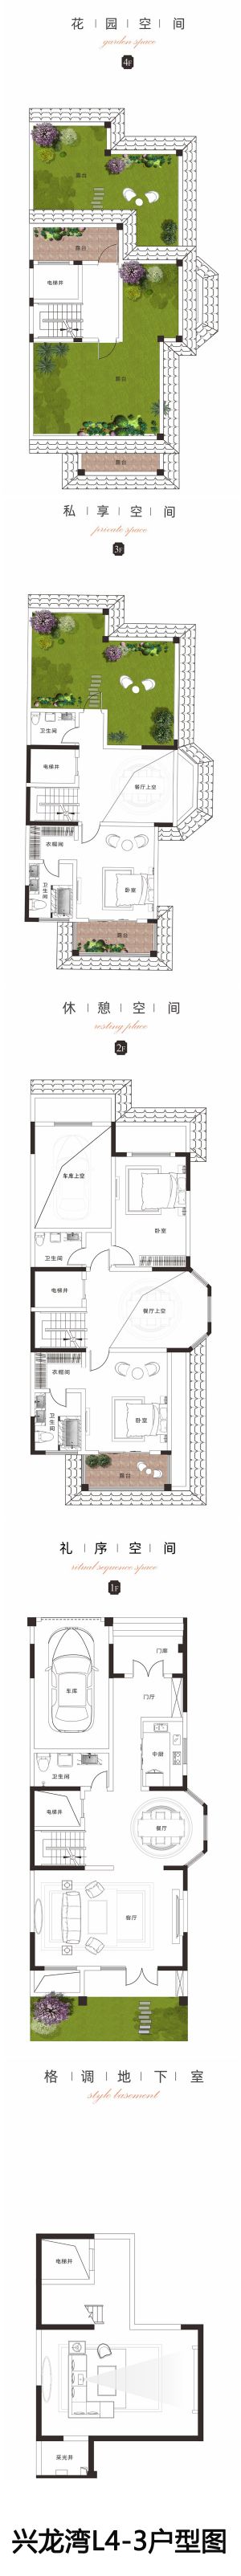 兴龙湾L4-3户型图-三室二厅五卫一厨-户型图